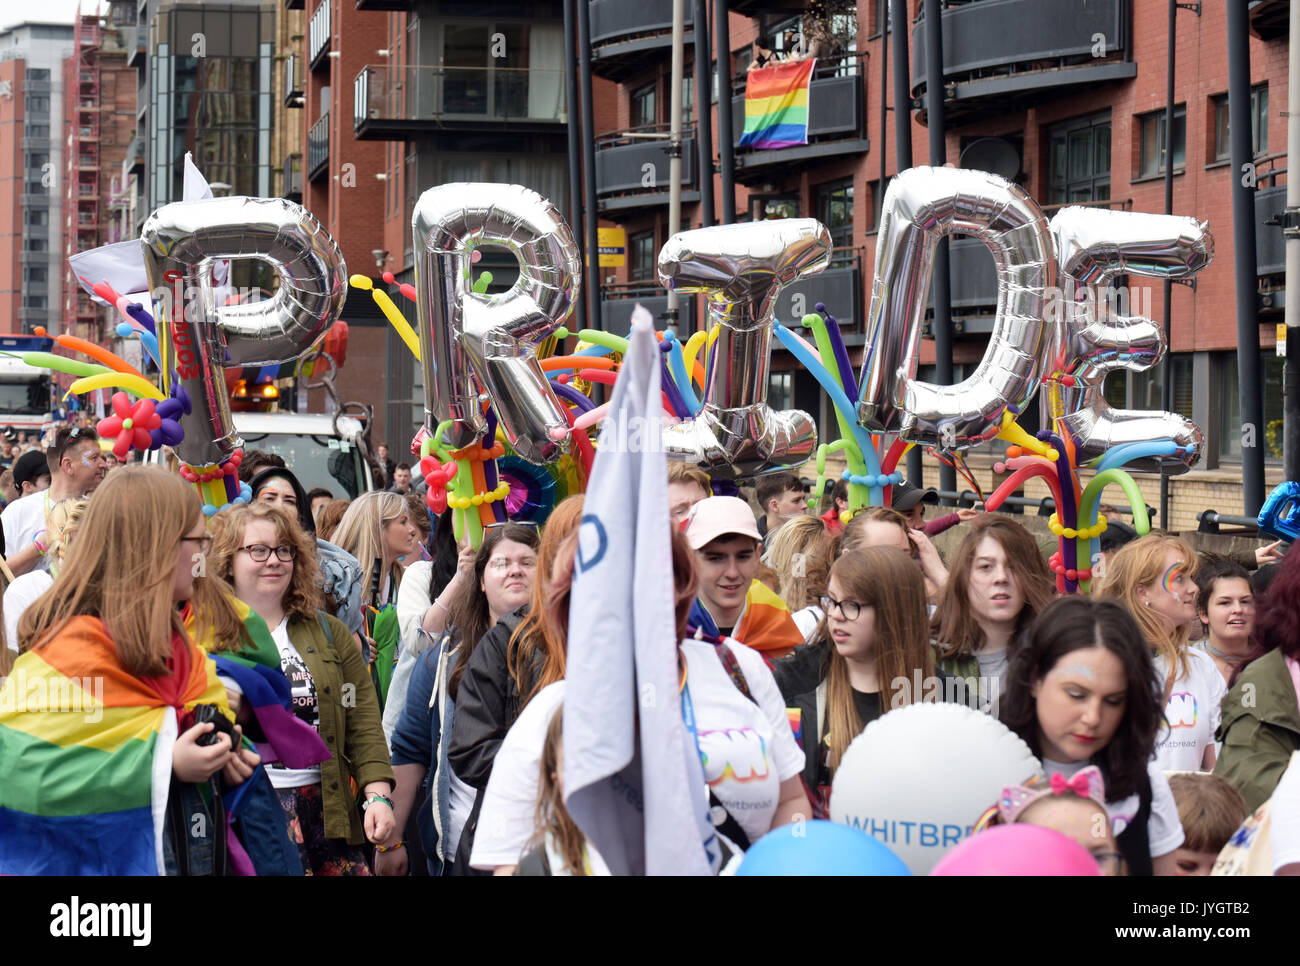 Glasgow, Scotland, Regno Unito. 19 Agosto, 2017. Orgoglio Glasgow in Scozia il più grande orgoglio LGBT celebrazione 2017. Foto di persone al Pride Parade attraverso il centro della città di Glasgow, allietati da alcuni membri del pubblico. Orgoglio Glasgow in Scozia il più grande orgoglio LGBT Celebrazione Foto Stock